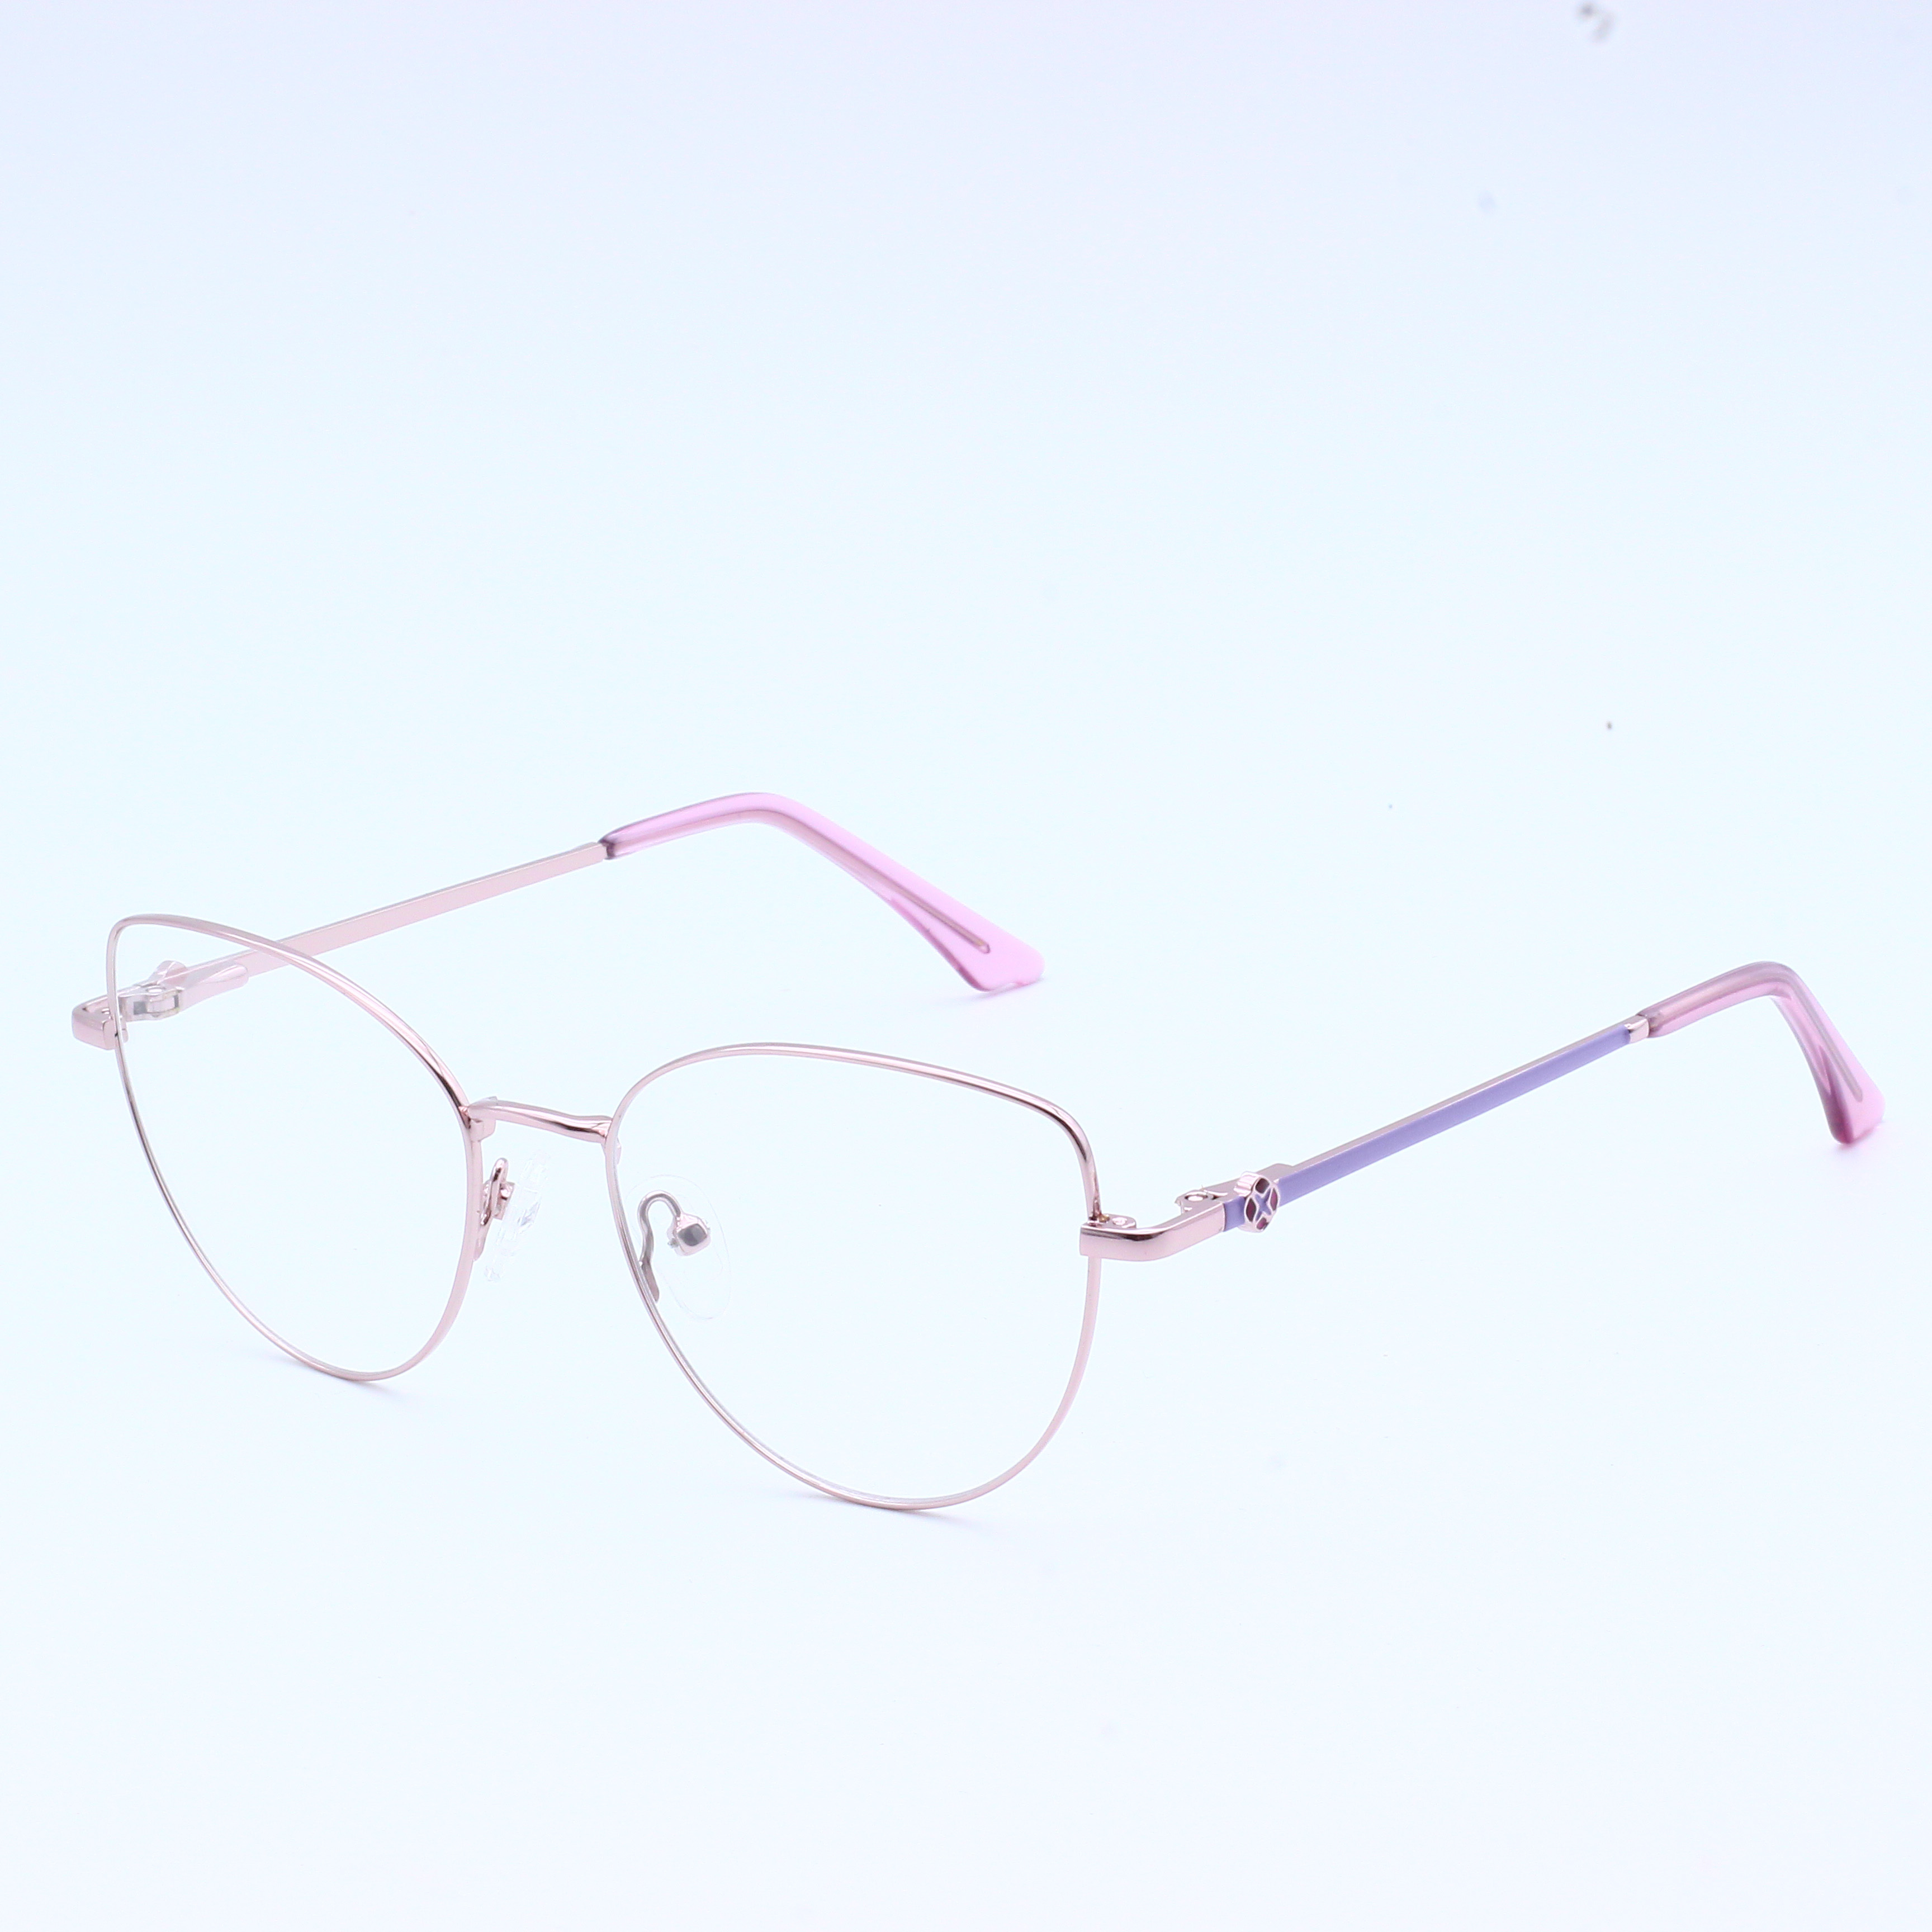 चश्मे का फ्रेम धातु का चश्मा कांच का फ्रेम (10)